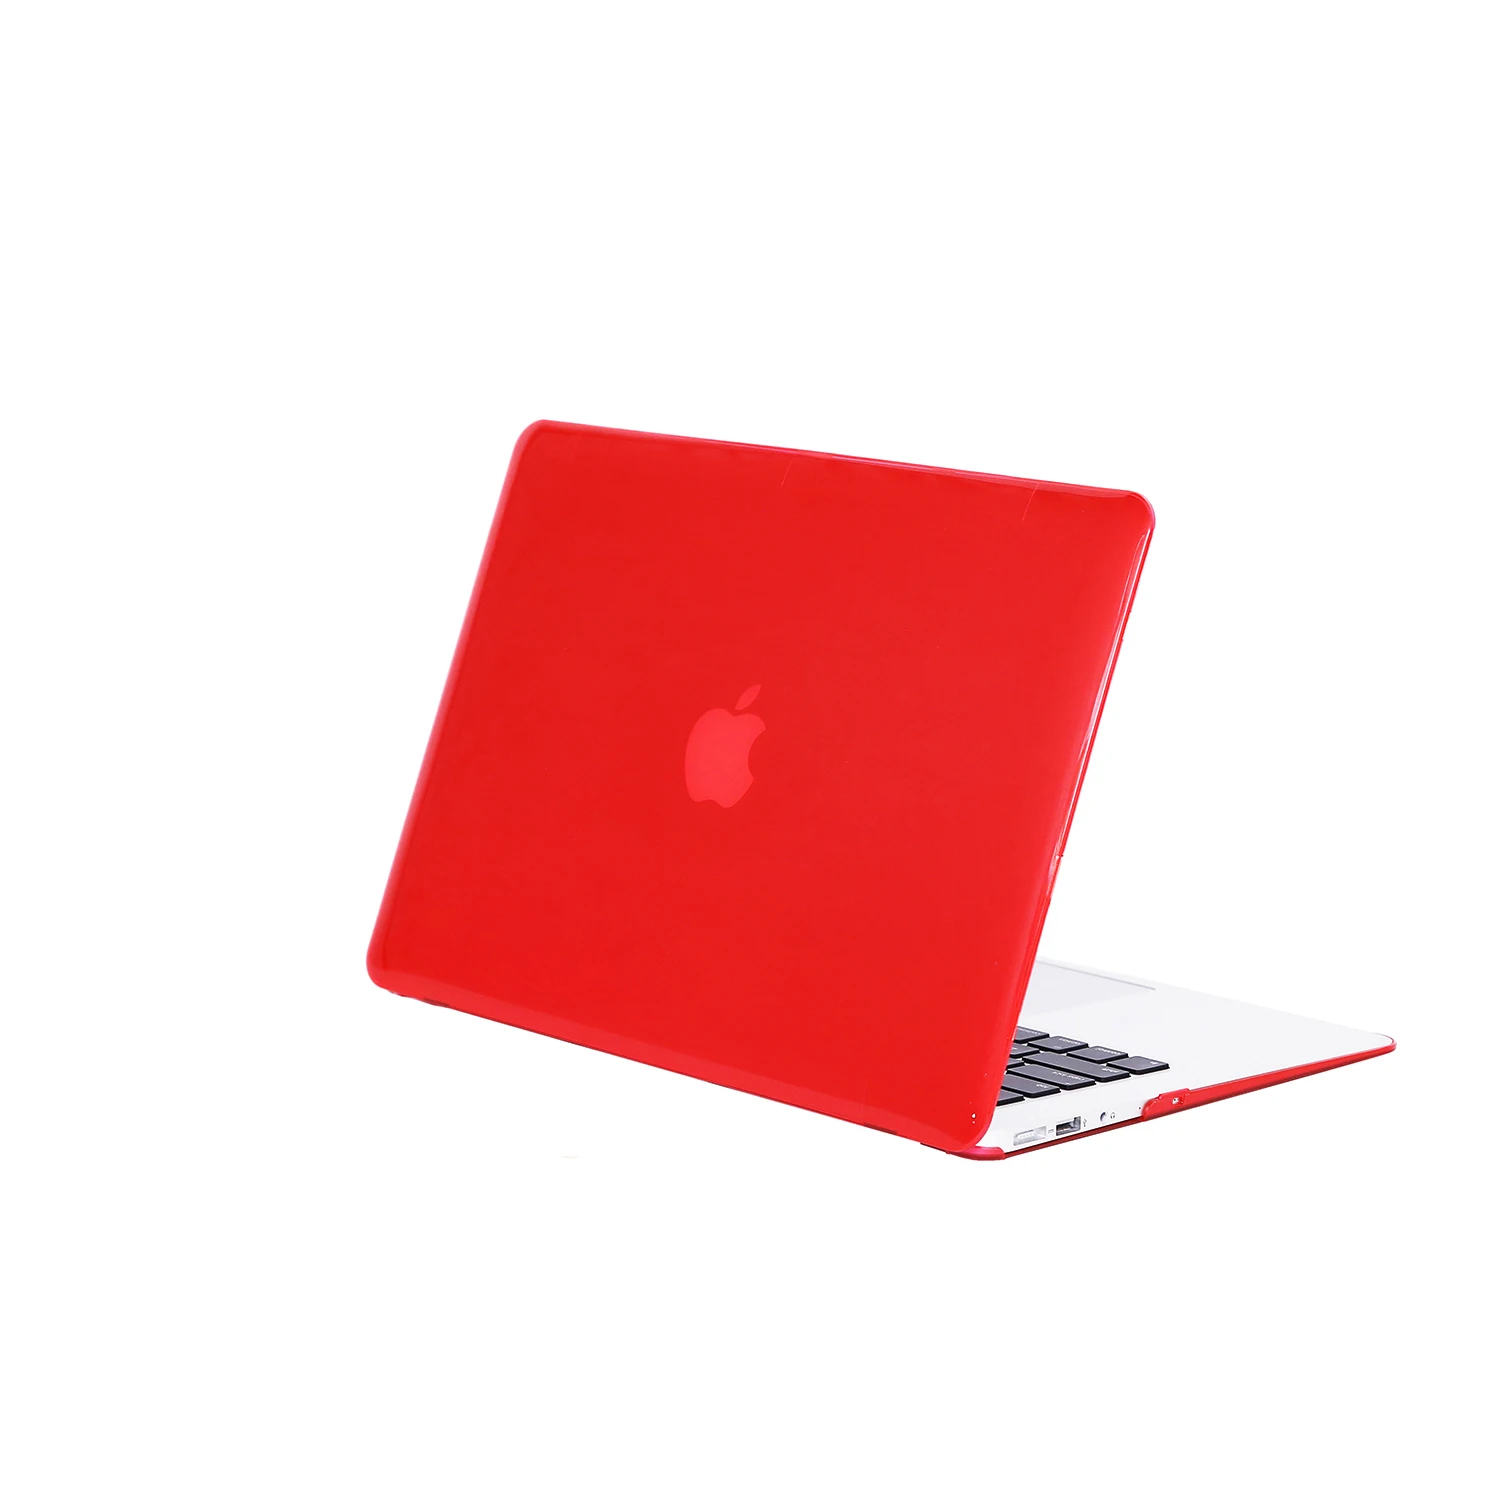 Чехол для Mac Book Air 13, прозрачный защитный чехол для Macbook Air Pro retina 12 15 13 A2159, чехол для ноутбука Mac Book notebook